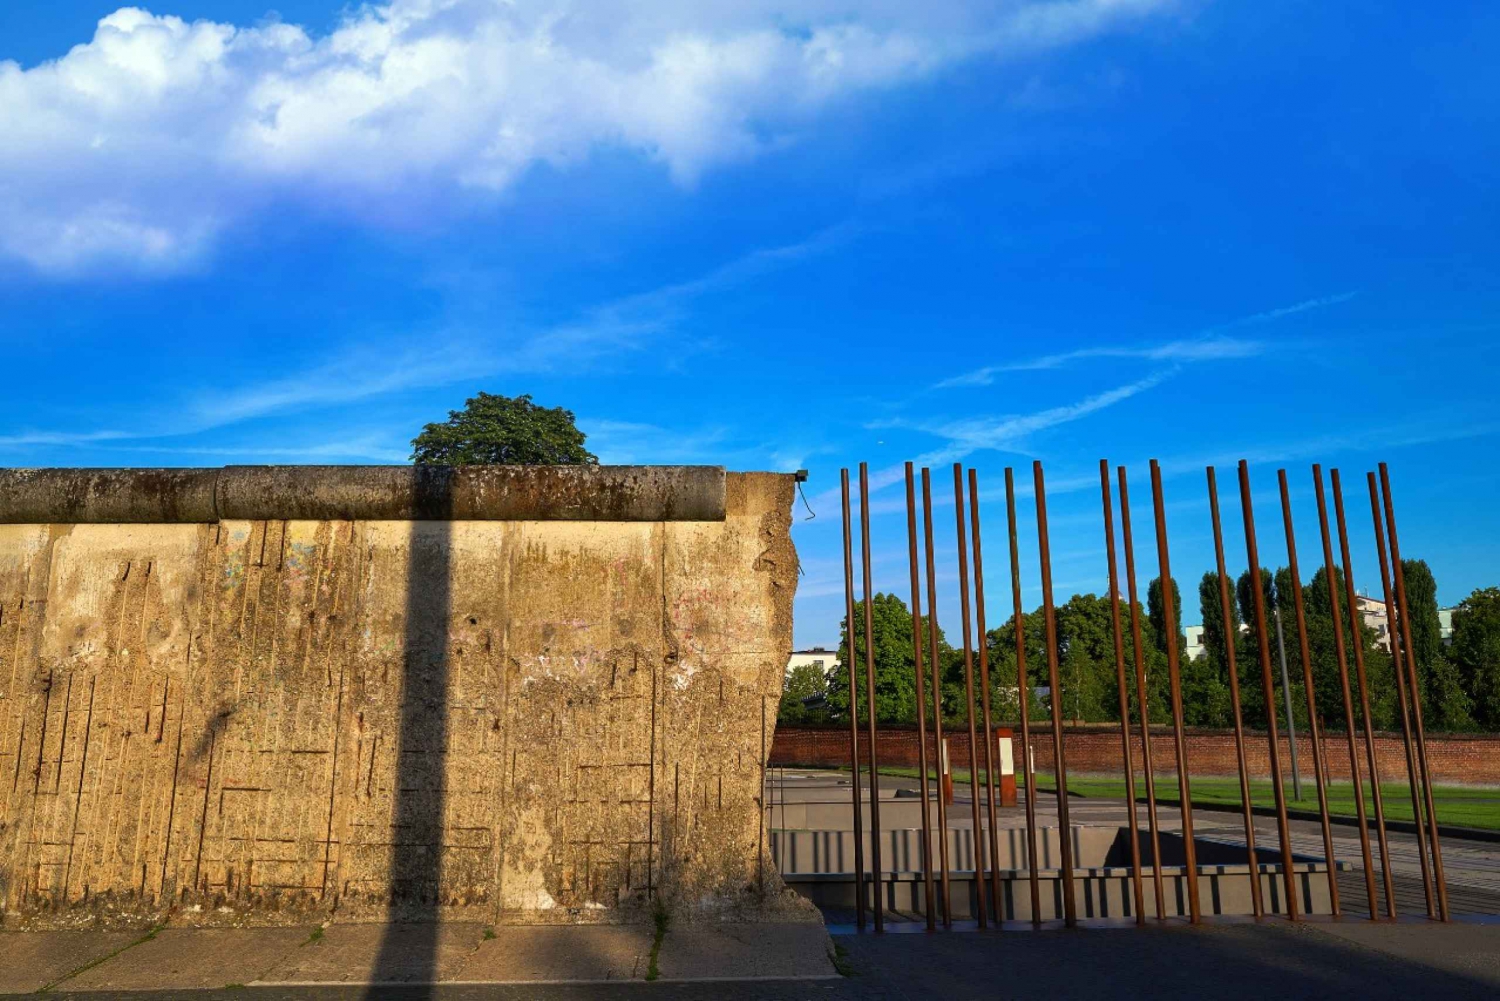 Berliini: Kylmän sodan historia ja Berliinin muuri - Opastettu kävelykierros